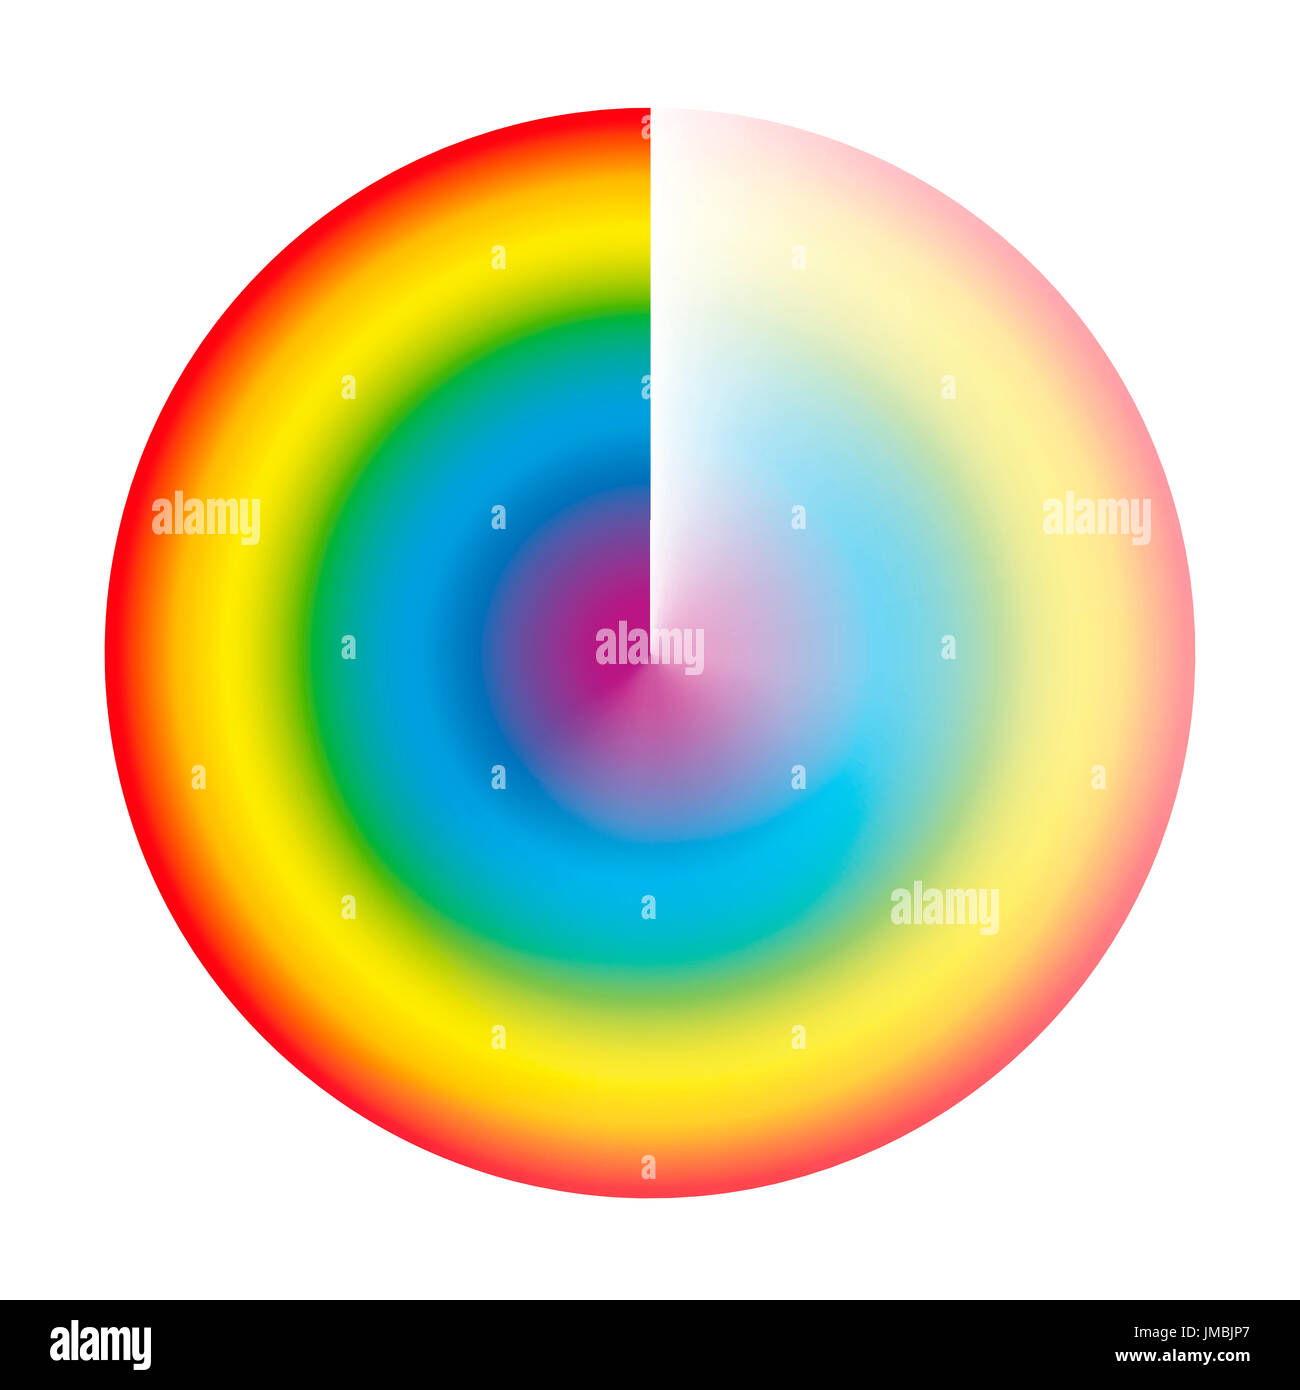 Color arcobaleno preloader o cerchio buffer con gradiente di trasparenza per essere utilizzato come simbolo di rotazione durante il caricamento e il download o lo streaming. Foto Stock